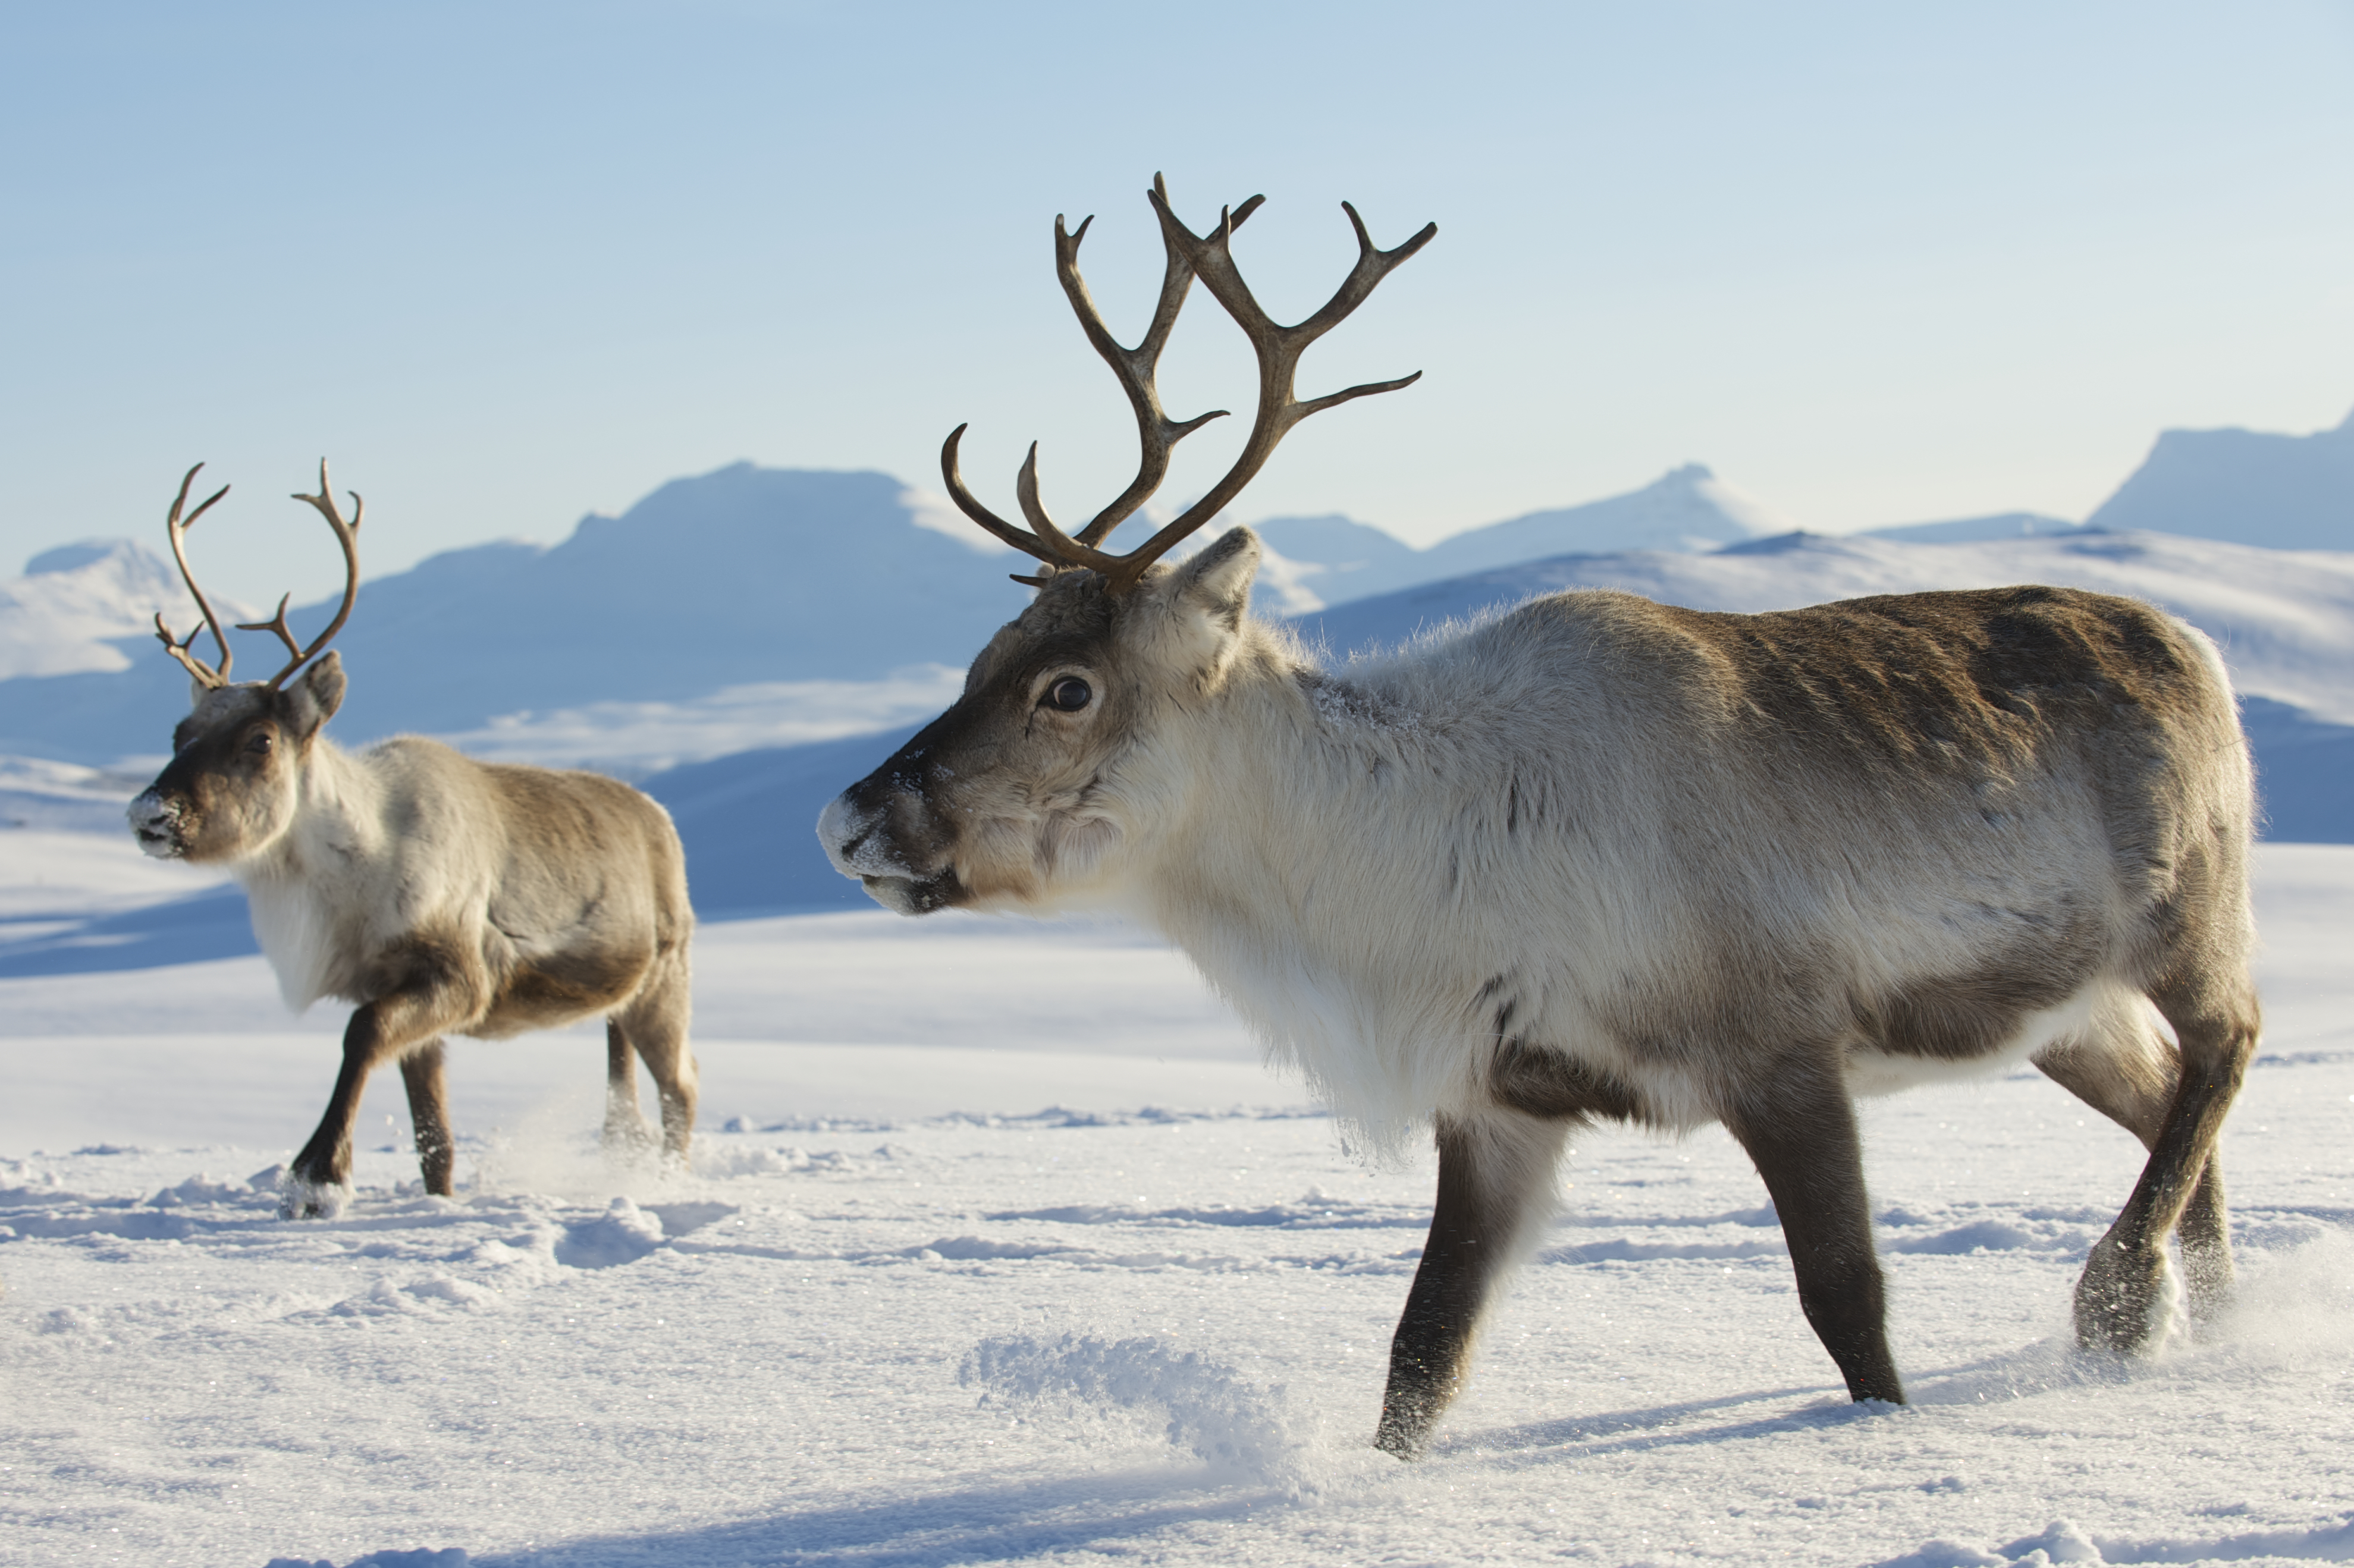 Reindeers in natural environment, Tromso region, Northern Norway